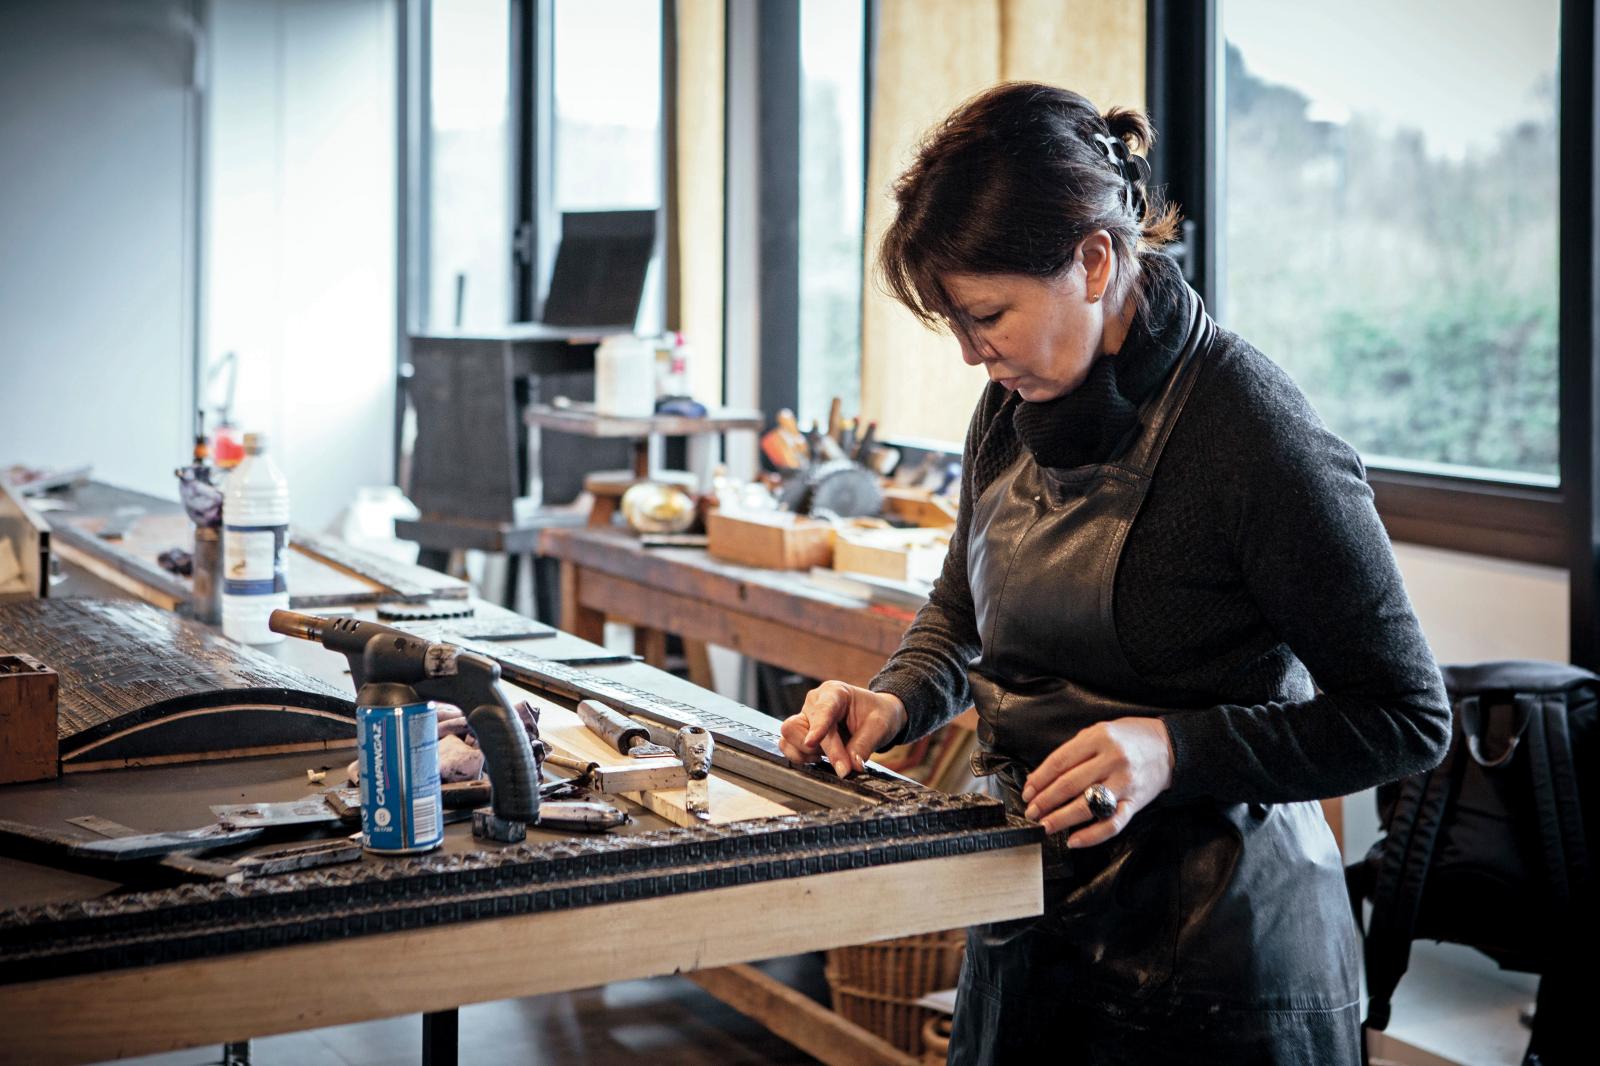 La créatrice Ingrid Donat dans son atelier, travaillant le moulage à la cire perdue de l’une de ses pièces. Courtesy Carpenters Workshop G